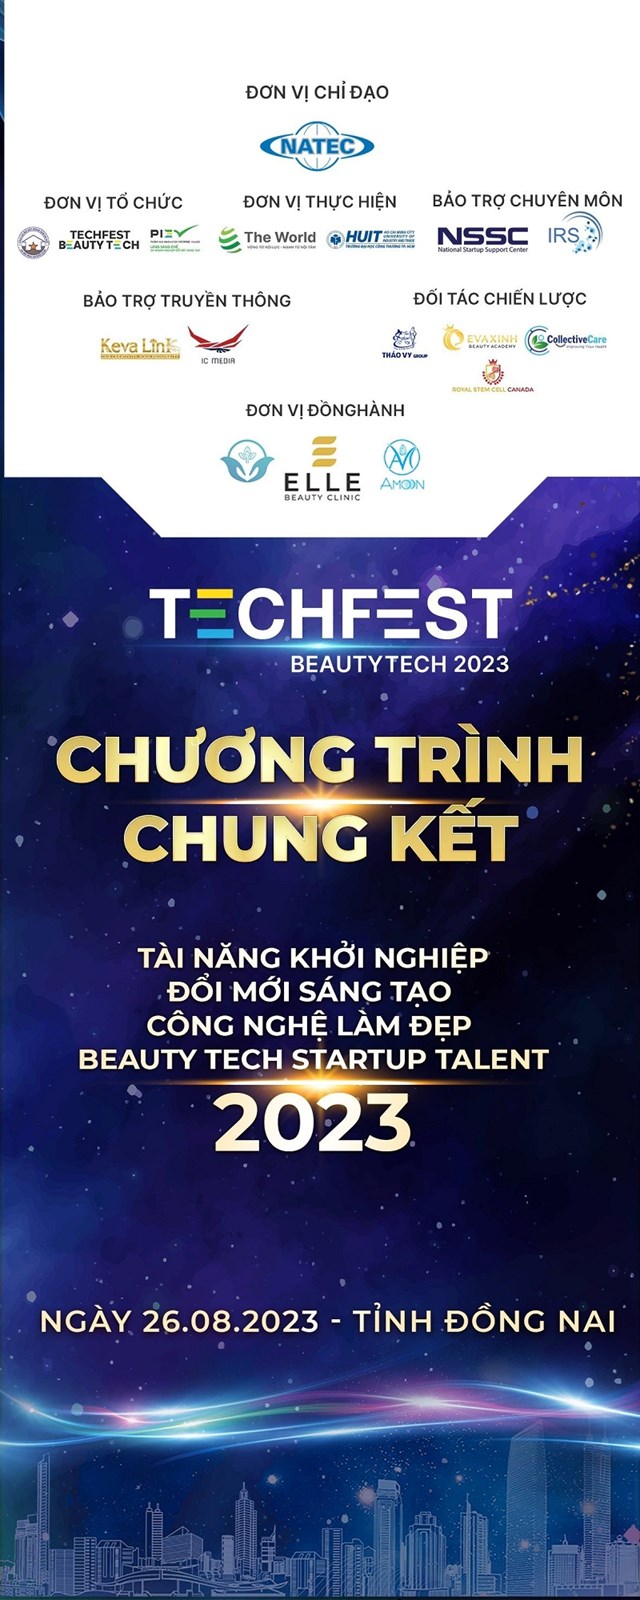 Chung kết khu vực miền Nam Beauty Tech StartUp Talent 2023 đang đến rất gần - Ảnh 1